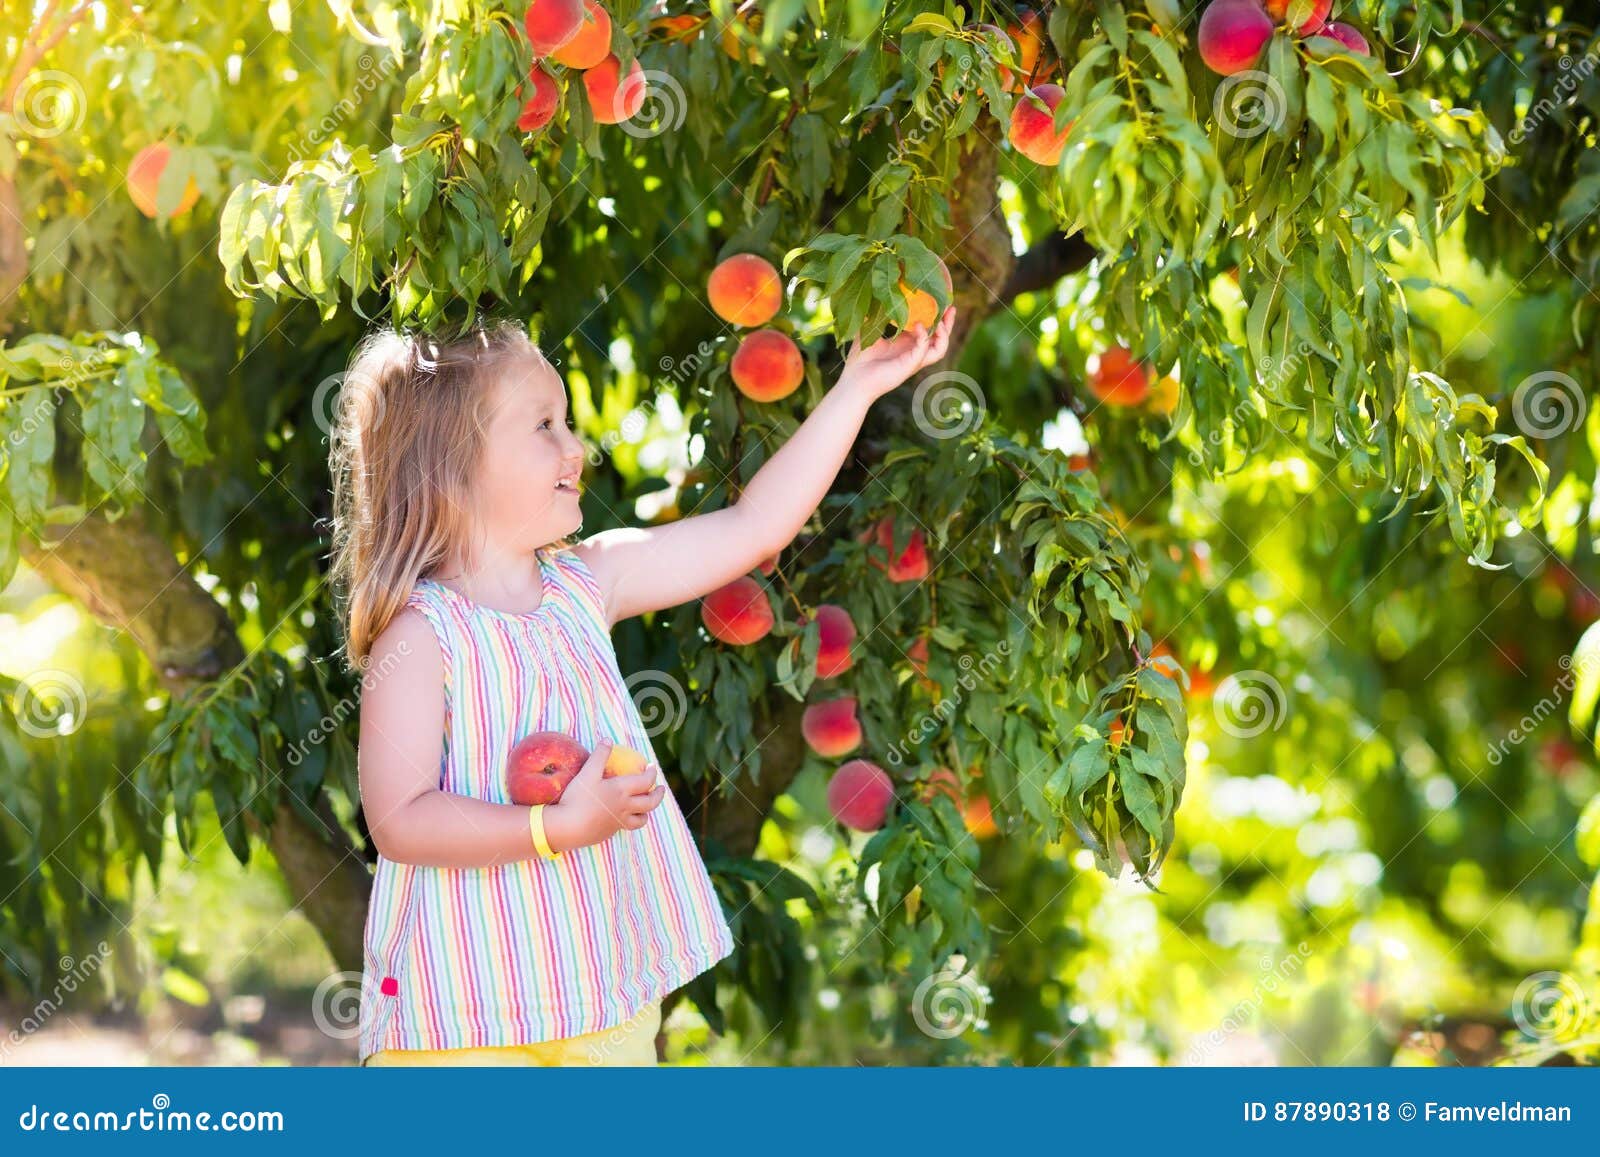 这个夏天，来一口桃子味的满足，快收下这份吃桃攻略吧→